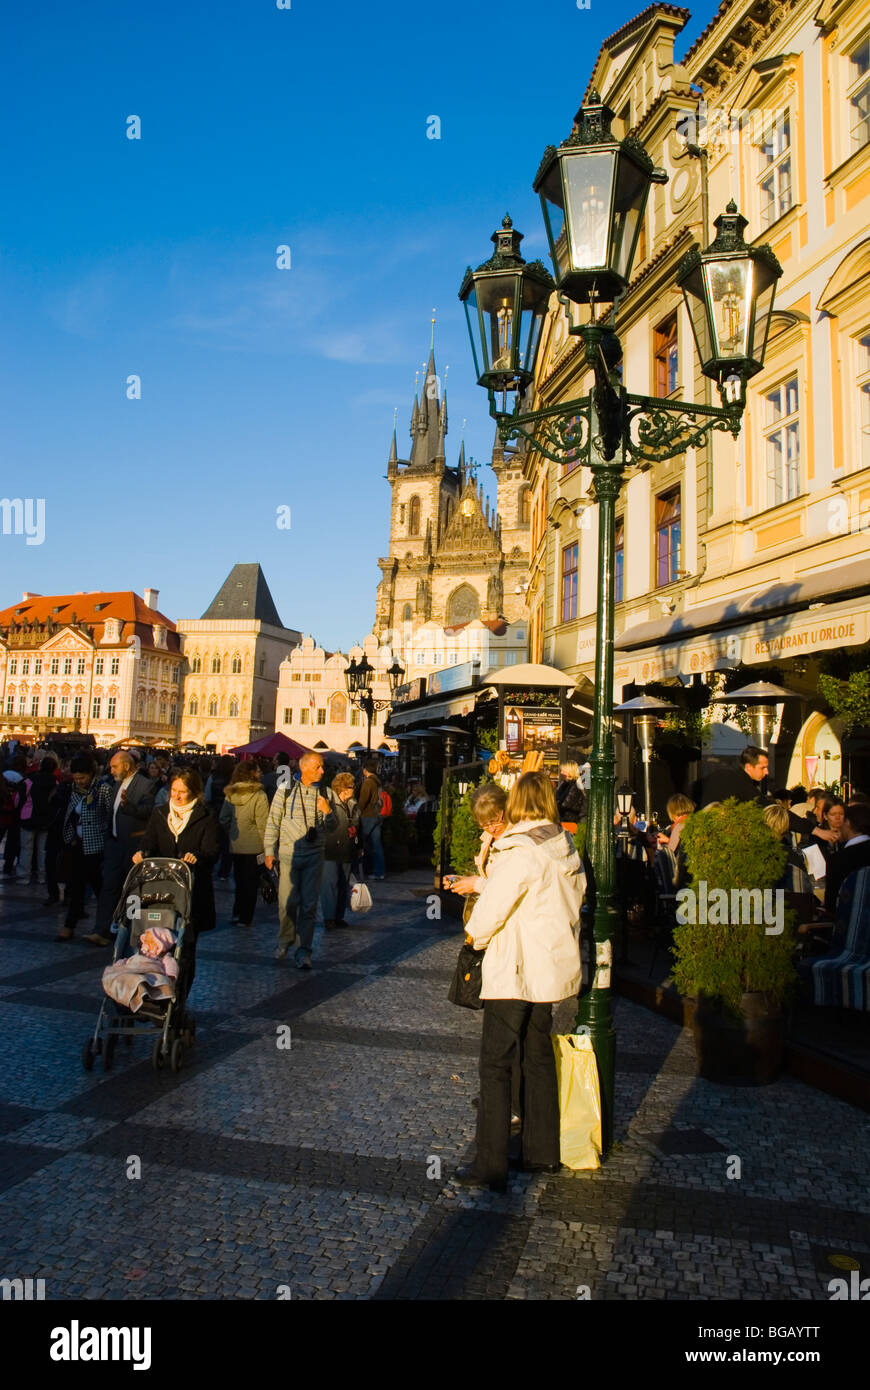 Staromestske namesti la place de la vieille ville de Prague République Tchèque Europe Banque D'Images